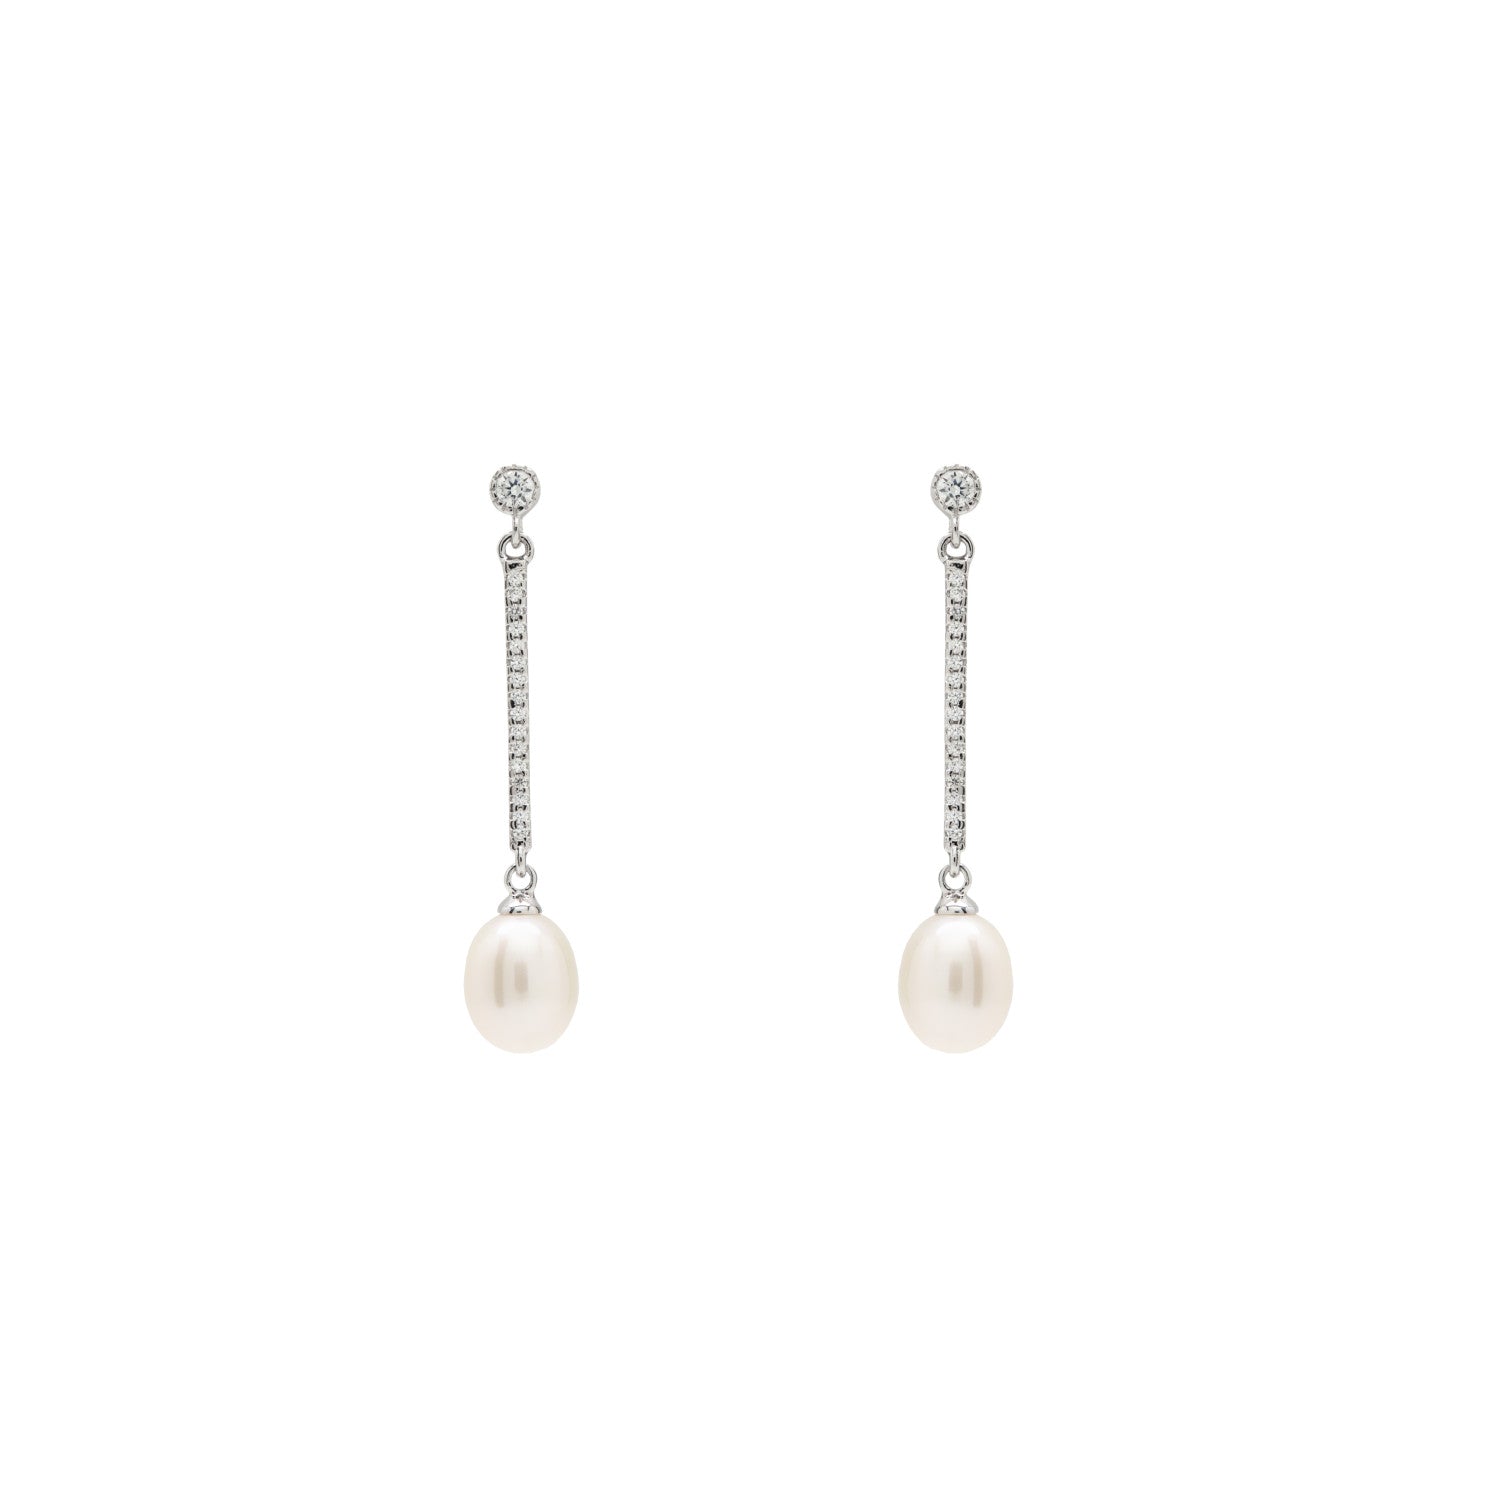 Pendientes largos perlas con movimiento y detalle de circonitas